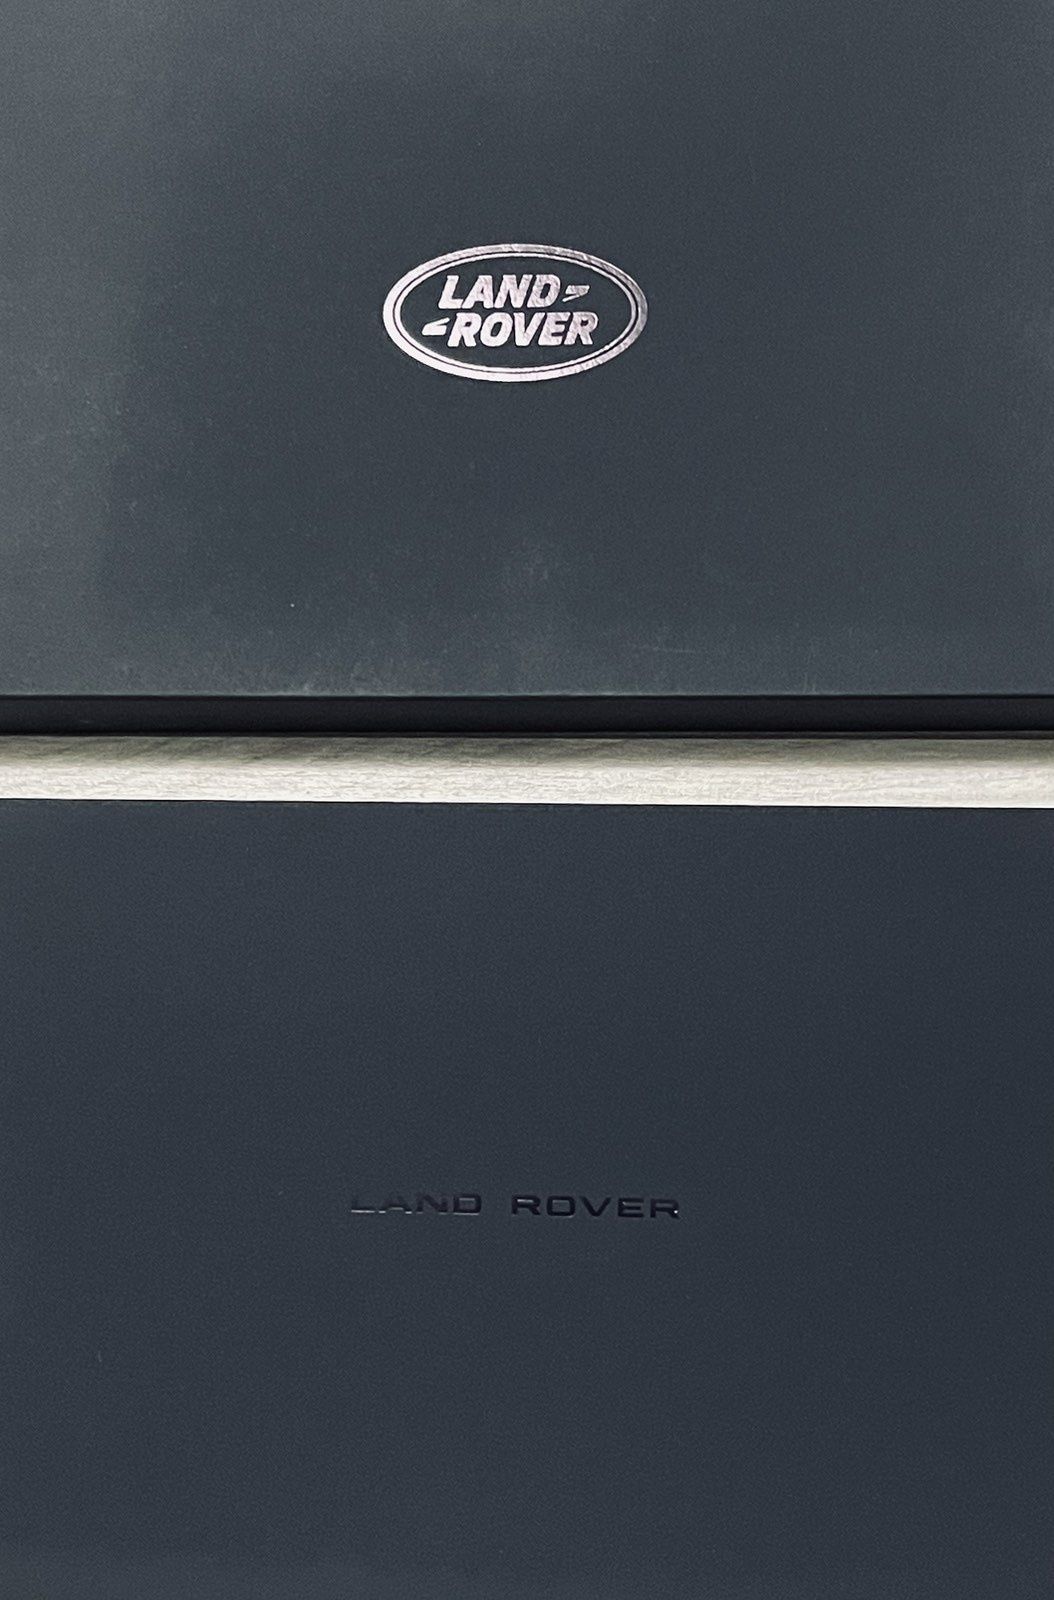 Оригинална луксозна кутия за Land Rover